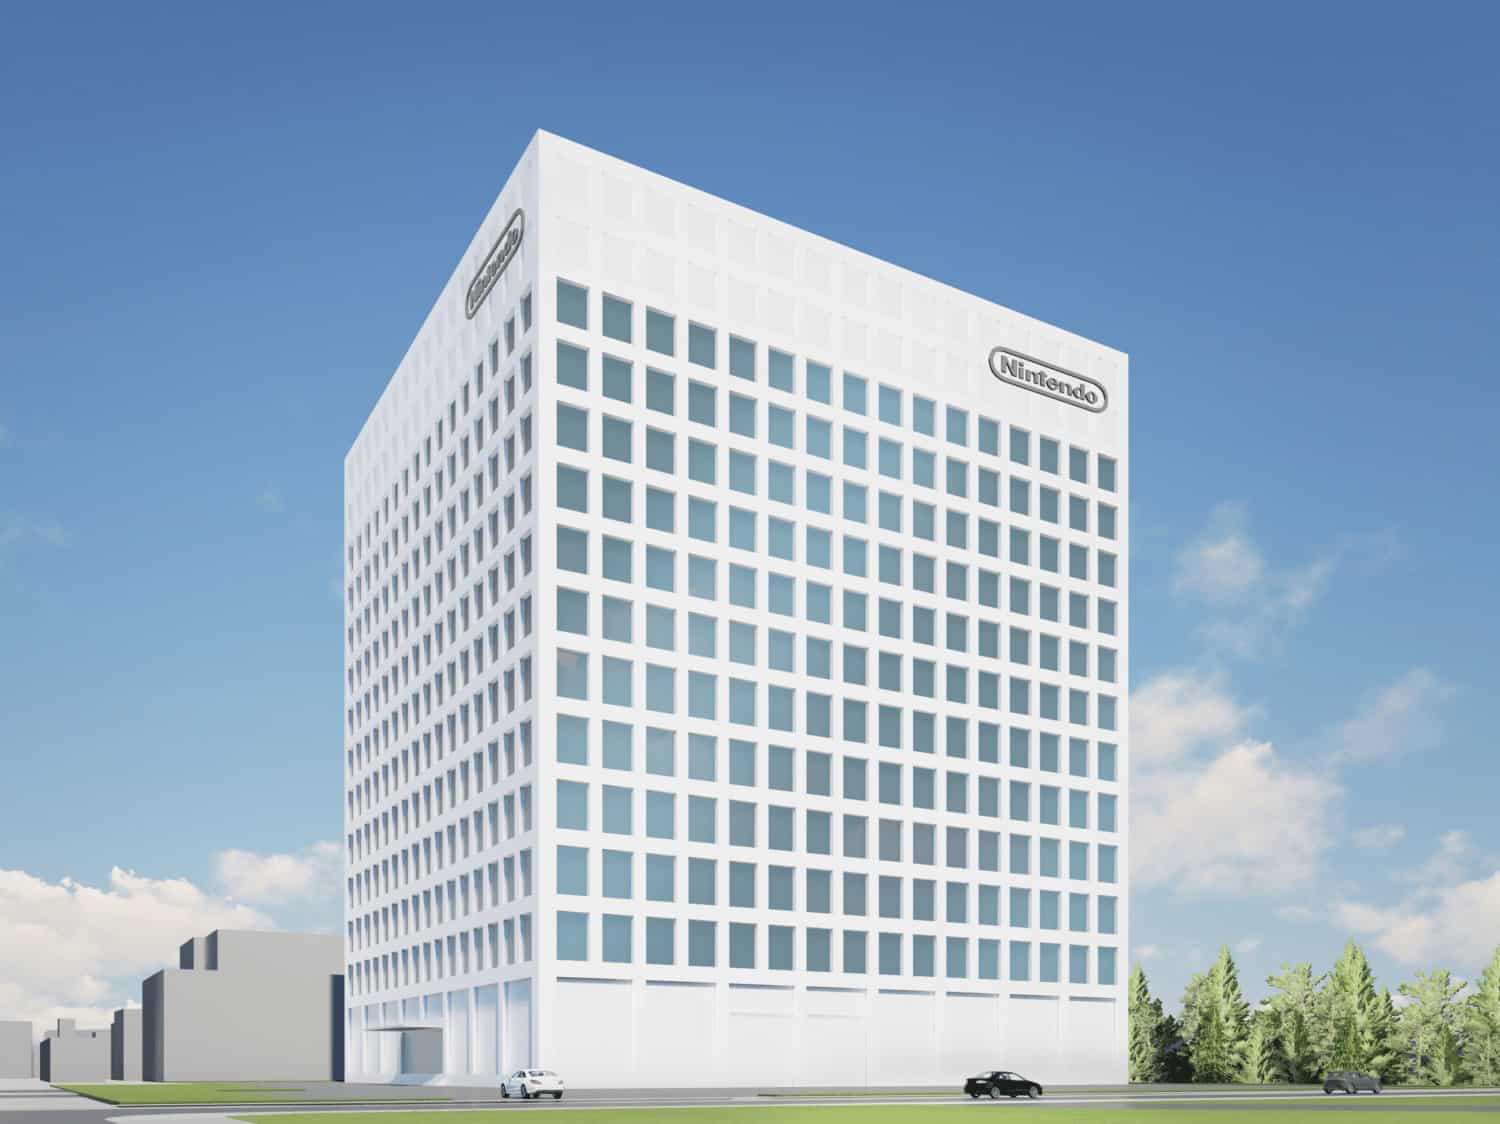 任天堂 本社近くに新たな開発拠点ビルの建設予定を発表 – 2027年12月に竣工予定